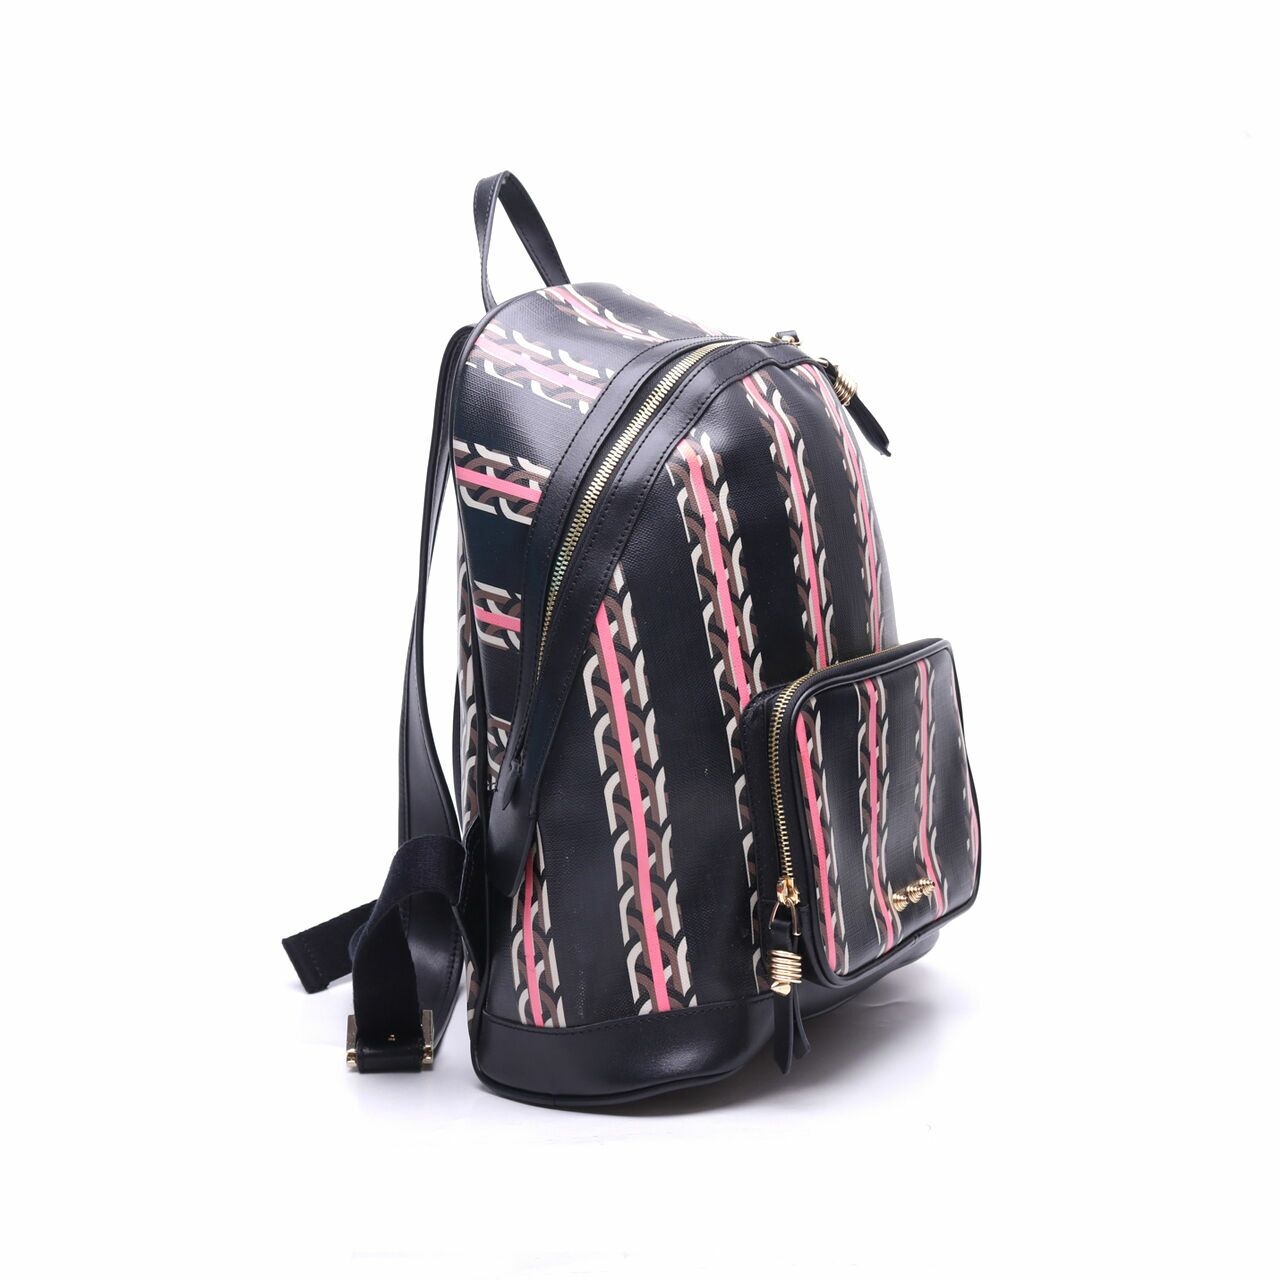 Dellest Black Multi-Pattern Backpack